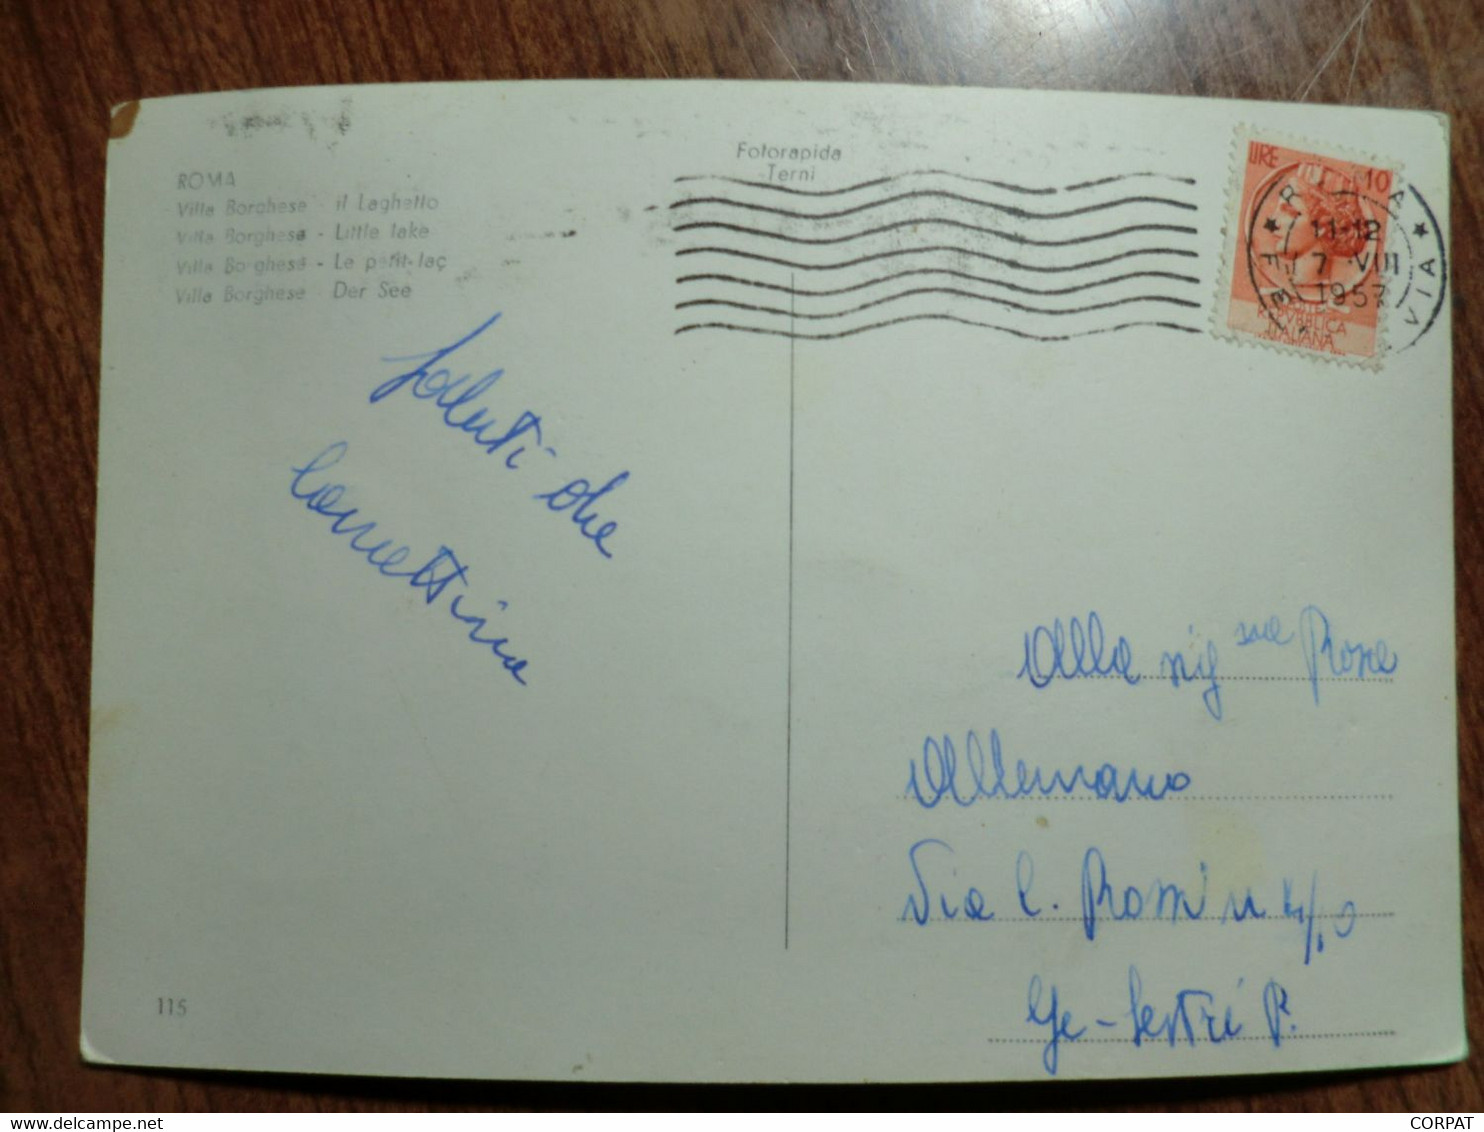 Cartolina Viaggiata Nel 1957 - Fiume Tevere